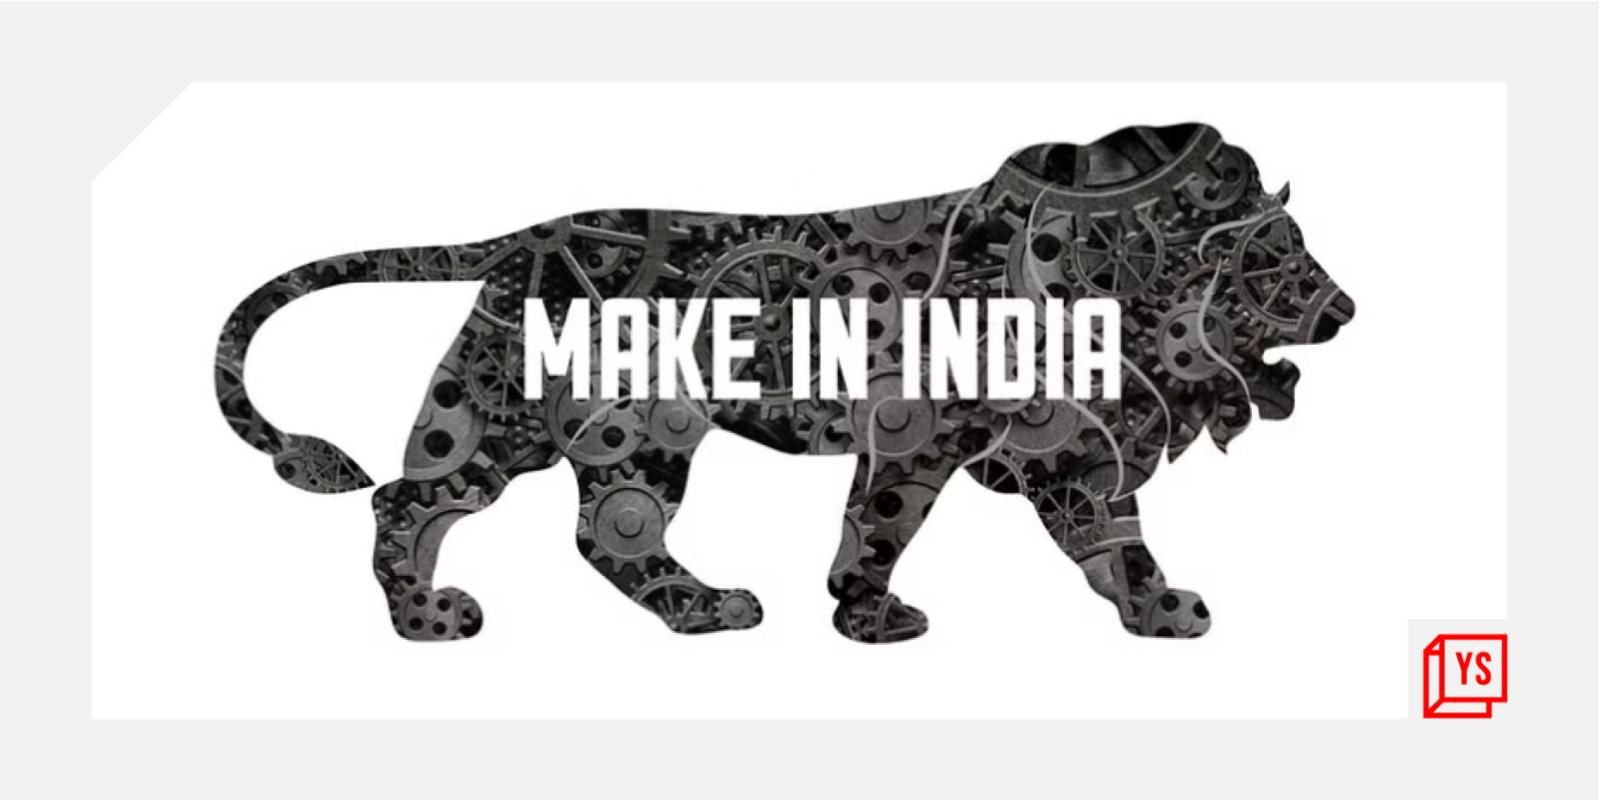 Temui startup teknologi konsumen yang mendukung kampanye Make in India